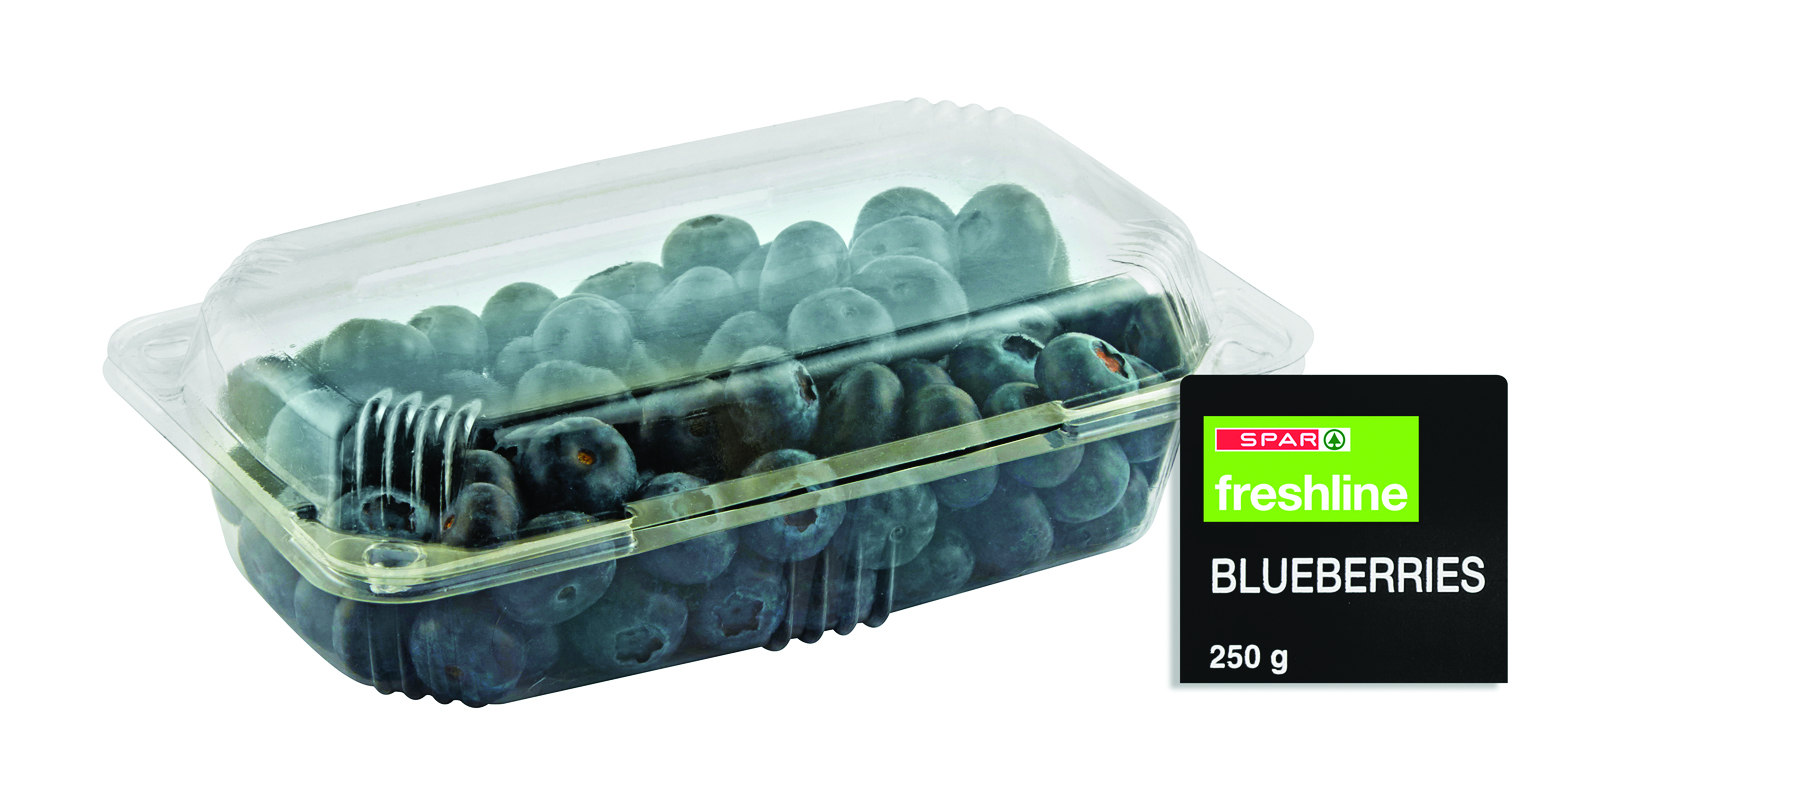 freshline blueberries  